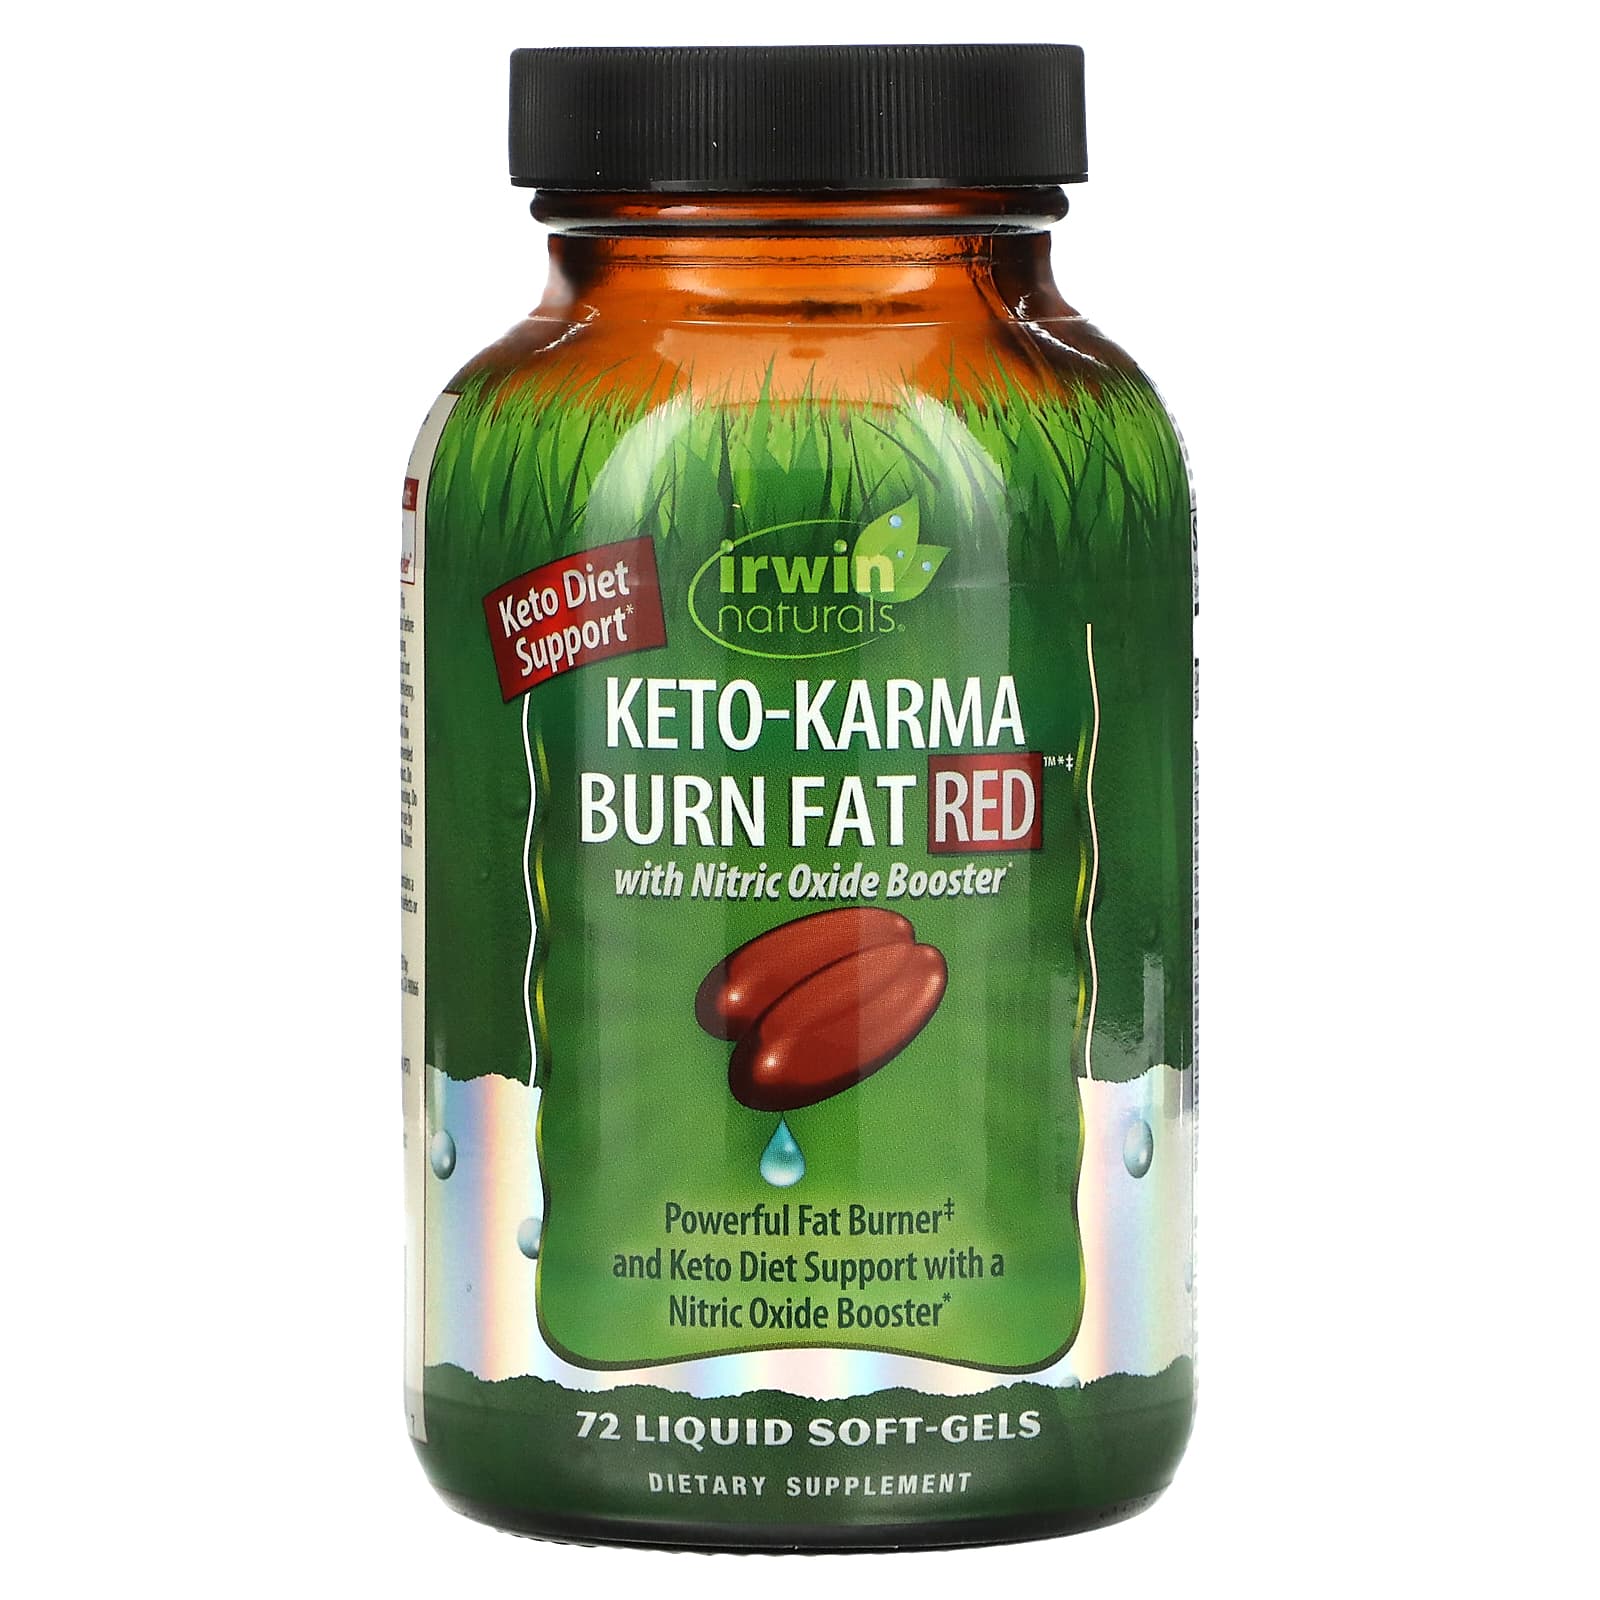 Irwin Naturals Keto-Karma Burn Fat Red 72 Liquid Soft-Gels irwin naturals keto karma burn fat red 72 liquid soft gels